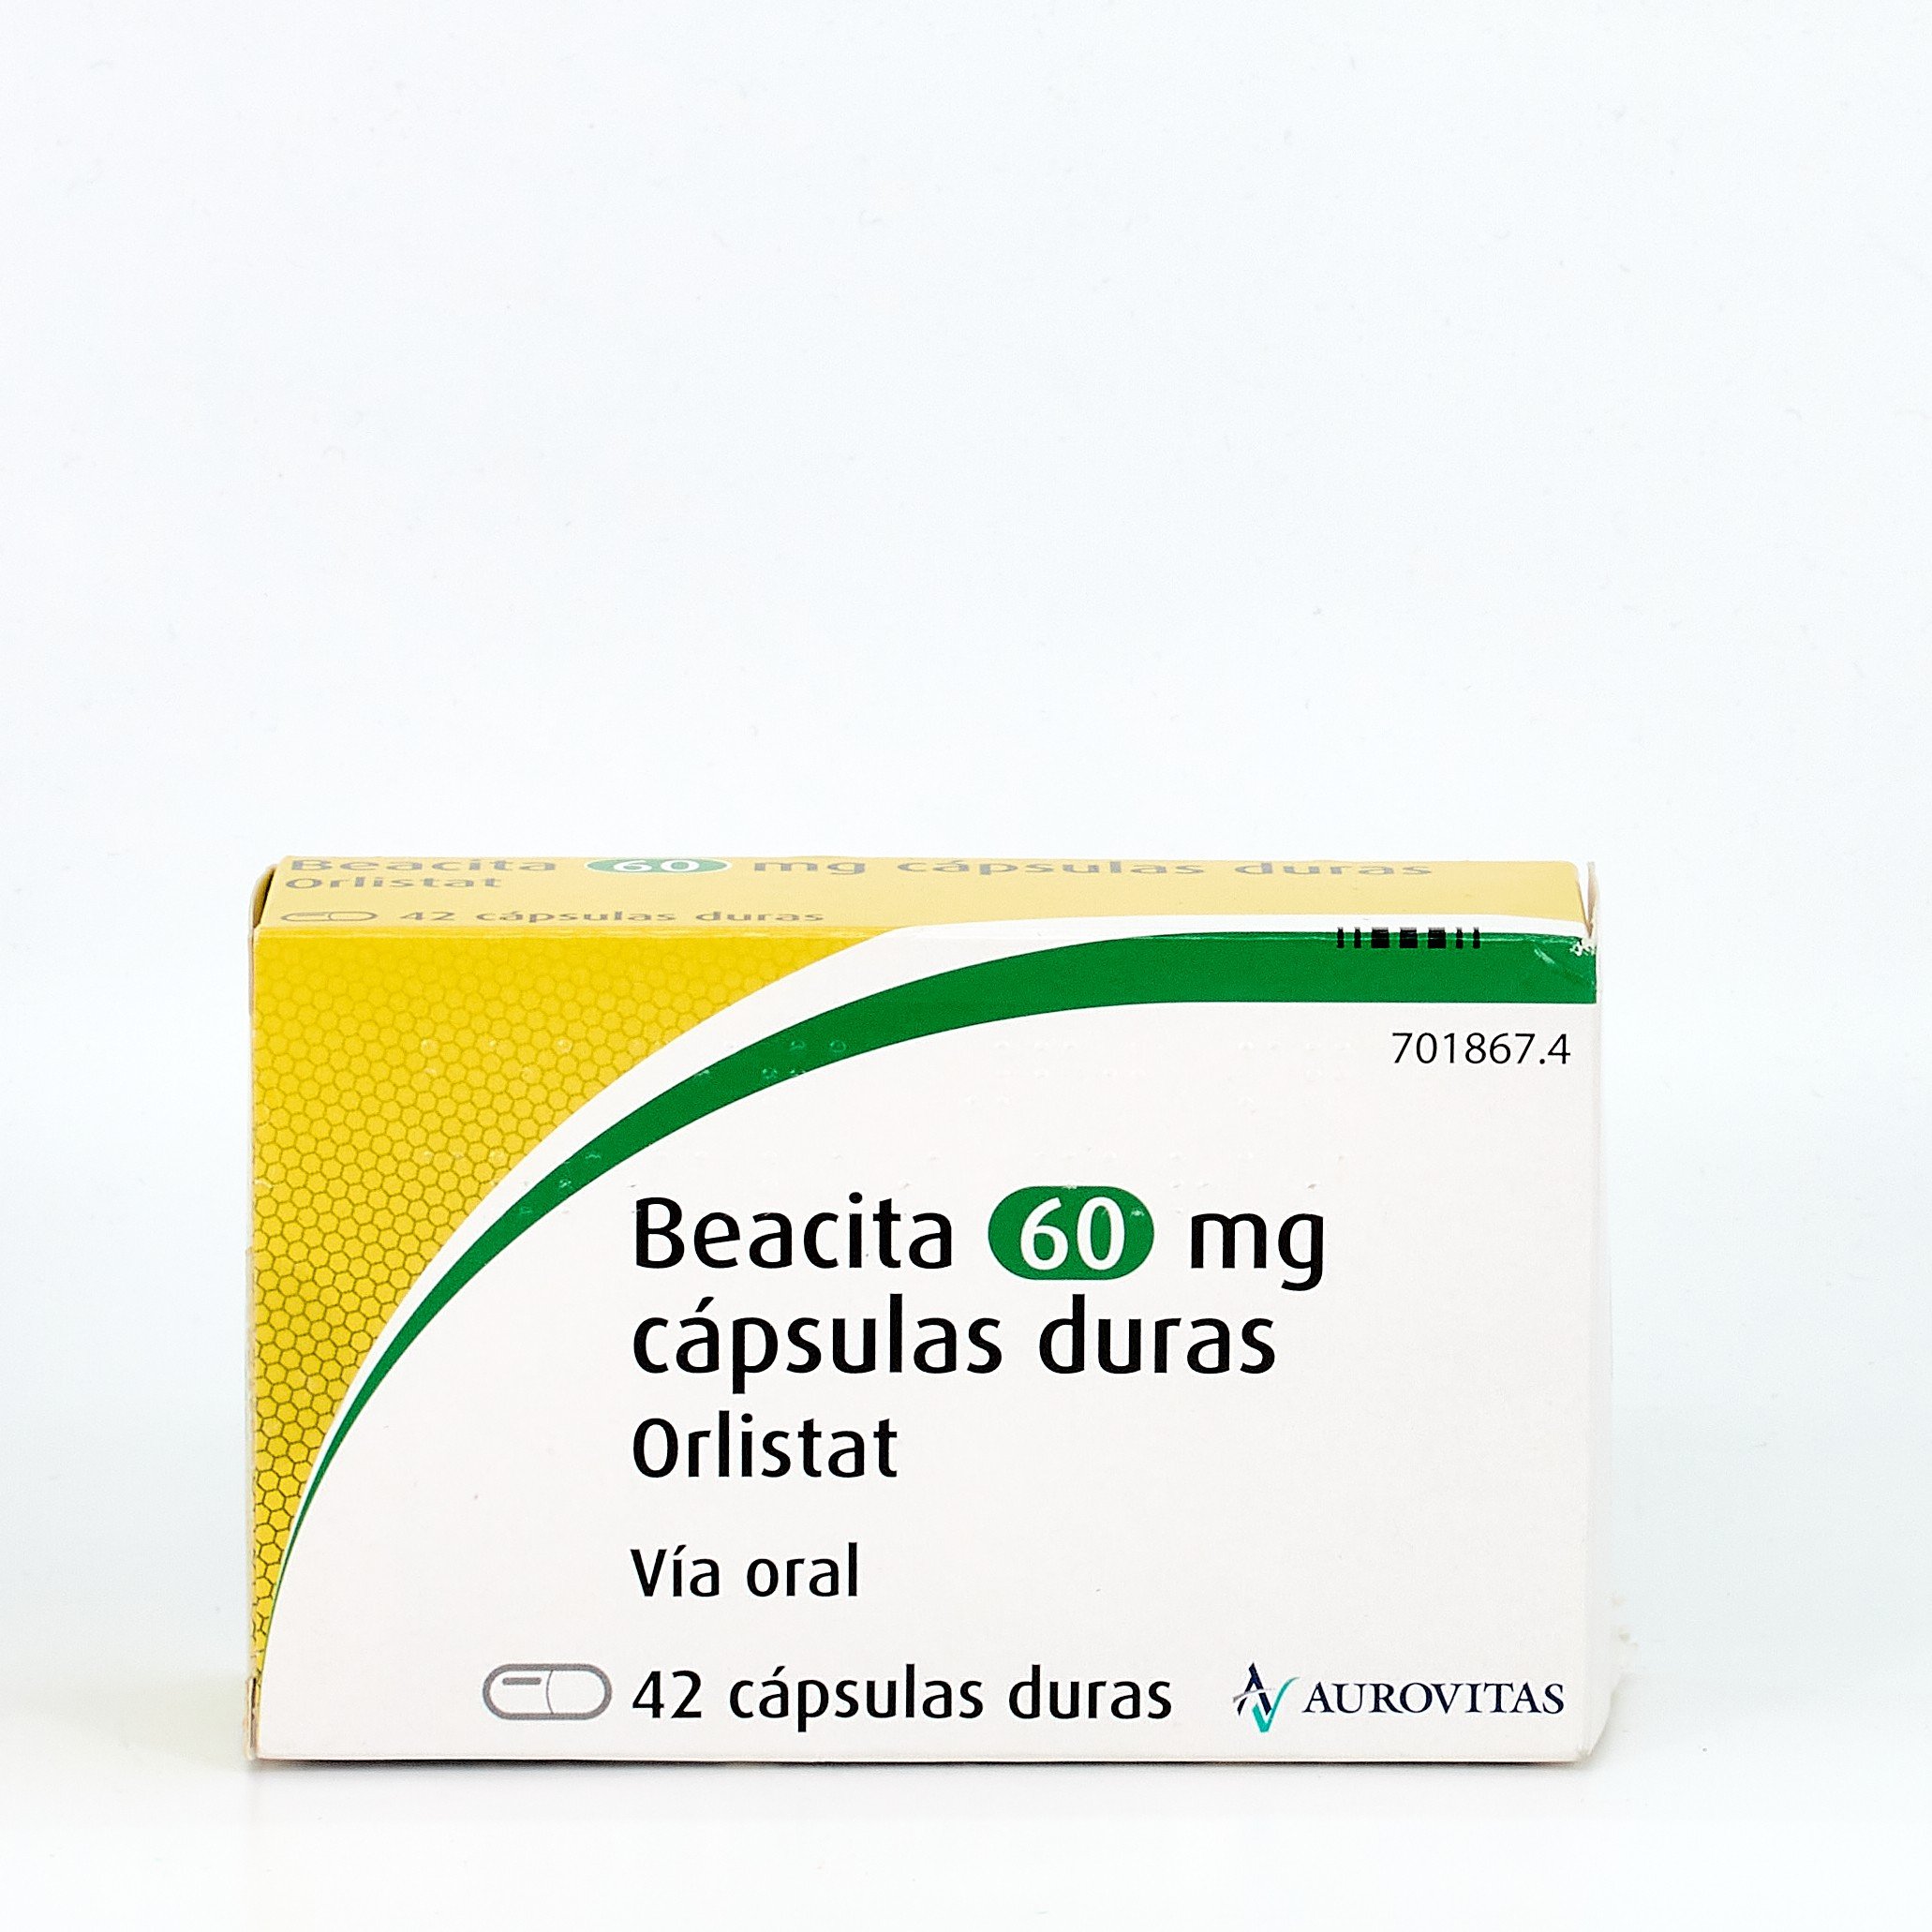 Comprar Beacita 60 mg, 42 cápsulas sin receta